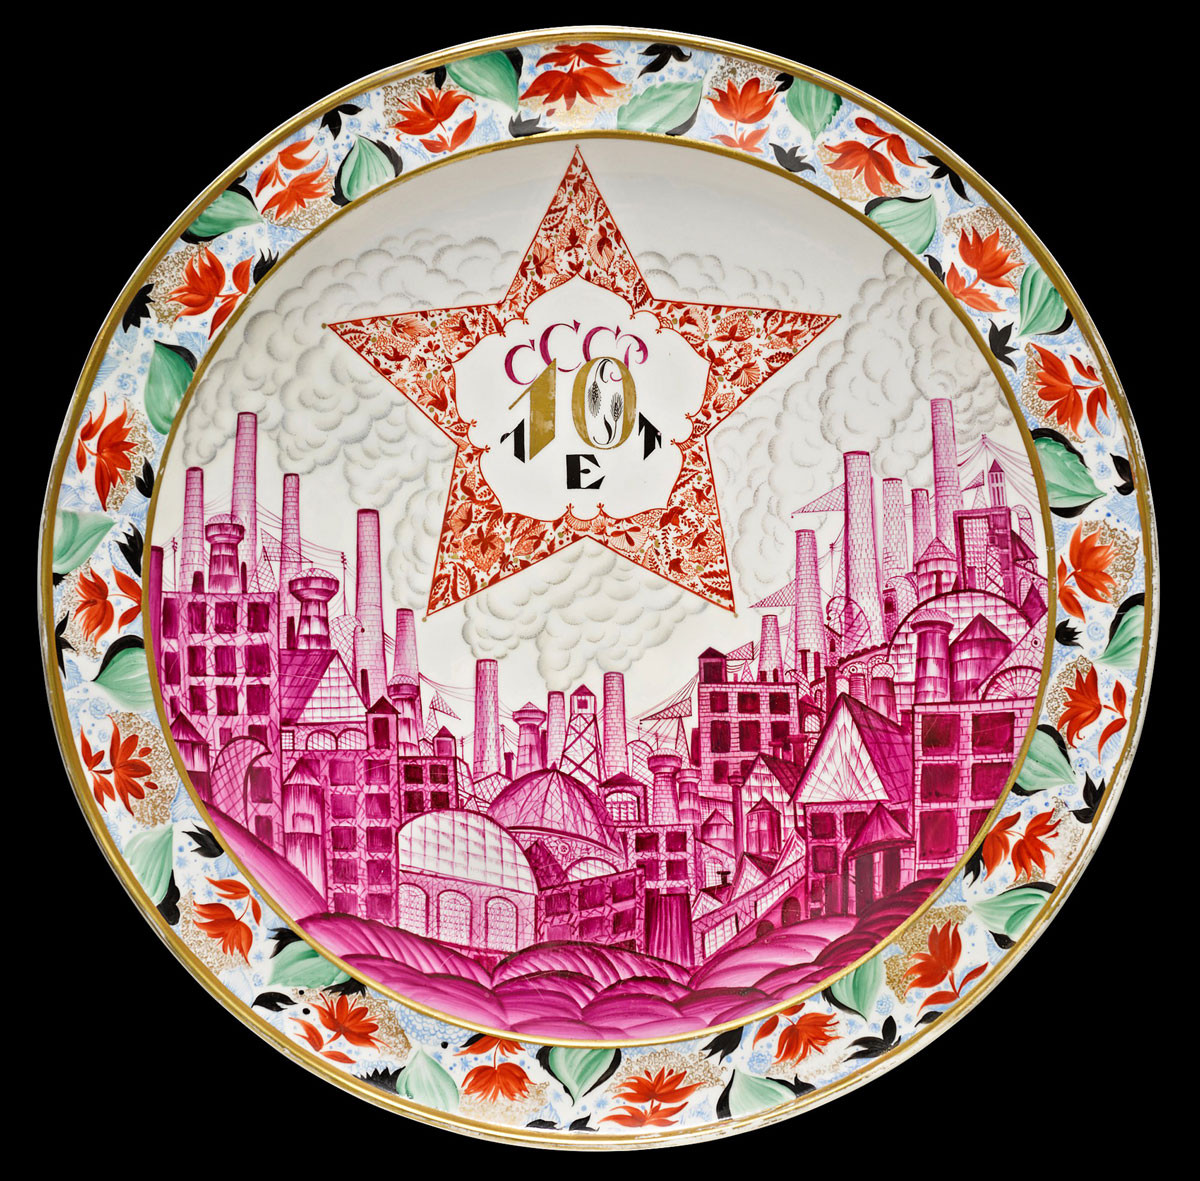 Vorovjevszkij a Szovjetunió mgalakulásának tizedik évfordulójára tervezte ezt a tányért. Nemrég 191 millió forintért kelt el